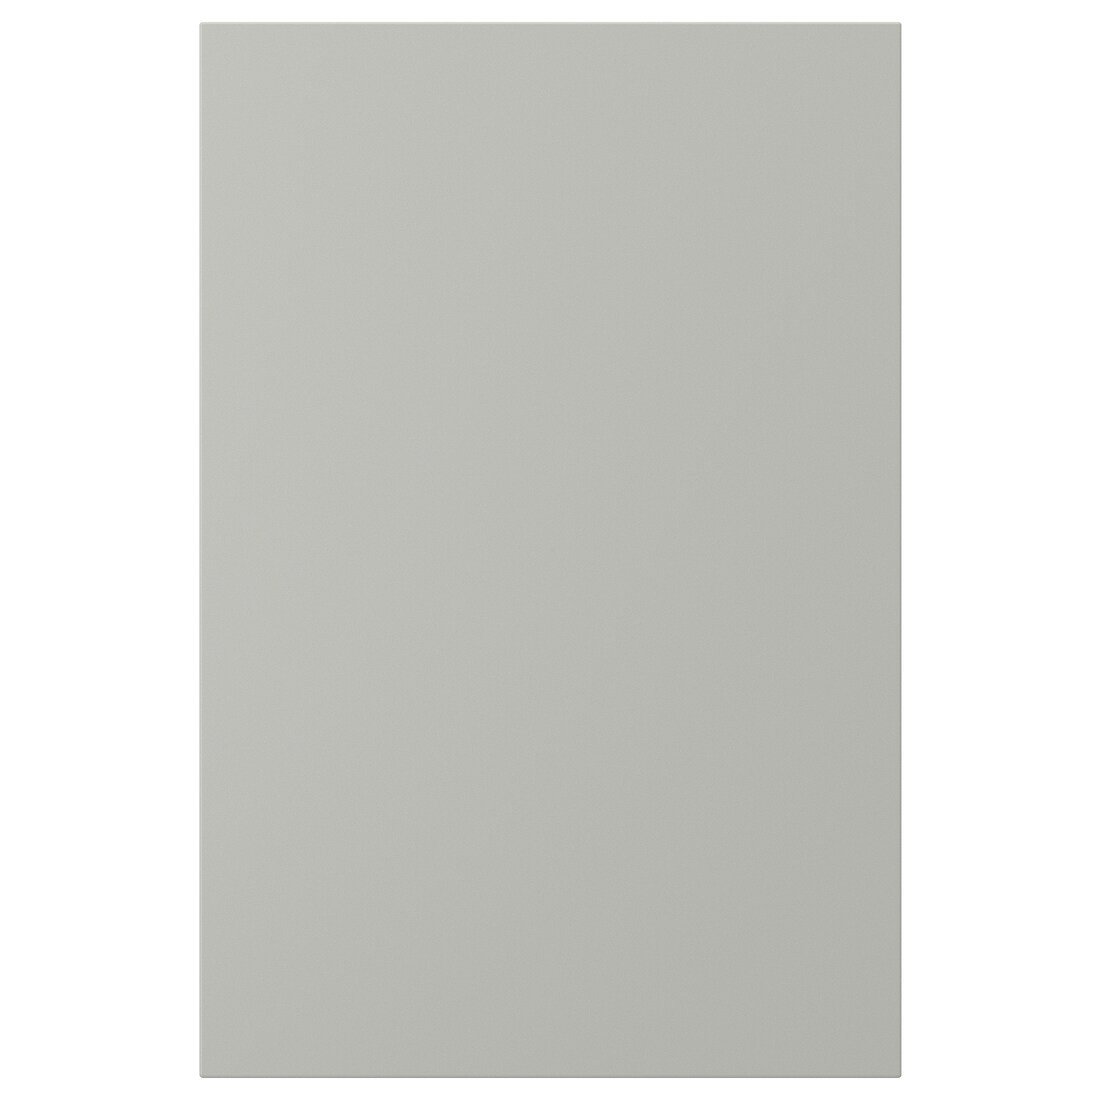 HAVSTORP Двері, світло-сірий, 40x60 см